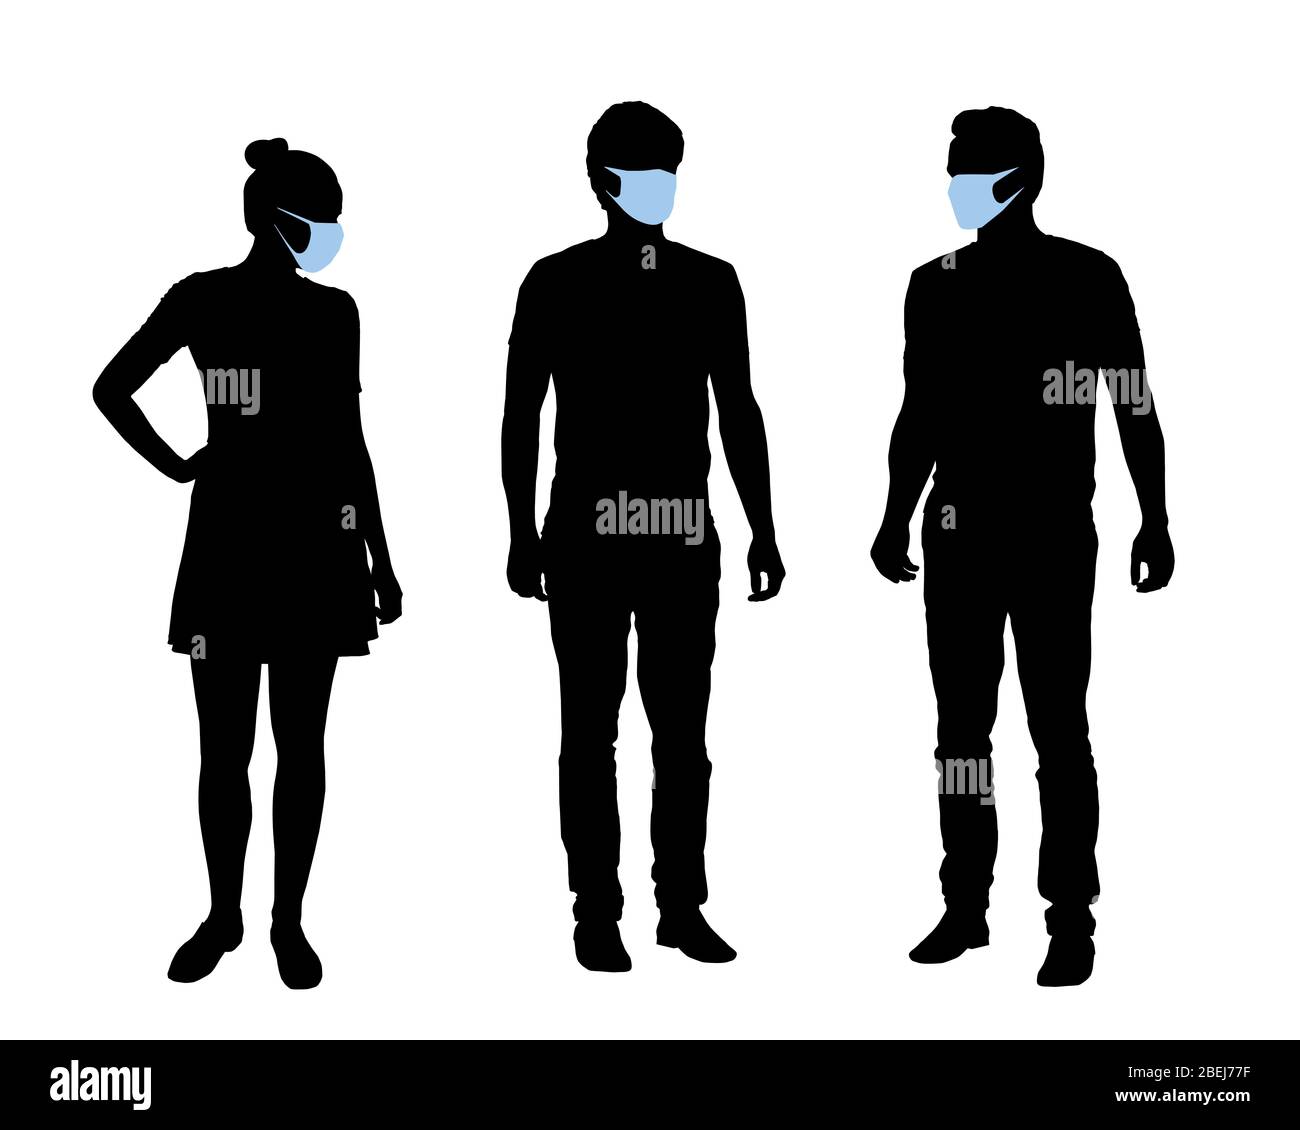 Realistische Darstellung von Silhouetten von Menschen, Männern und Frauen Zeichen mit Schutzmasken gegen Kovid-Infektion im Gesicht. Isoliert auf weiß Stock Vektor